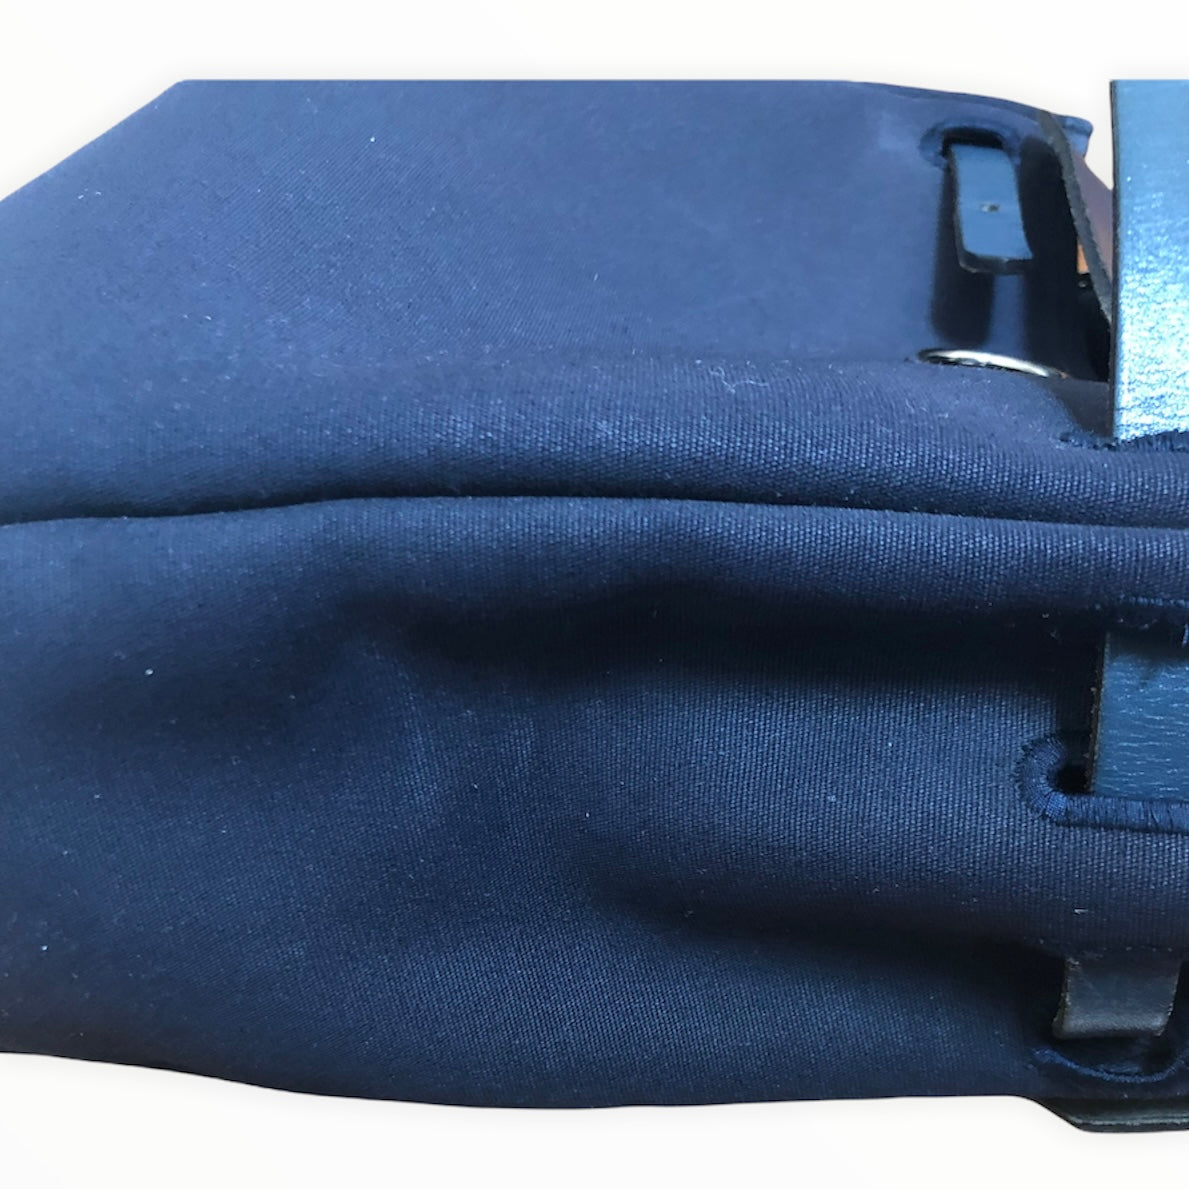 Hermes Blue Canvas Toile Herbag Tote – Ladybag International